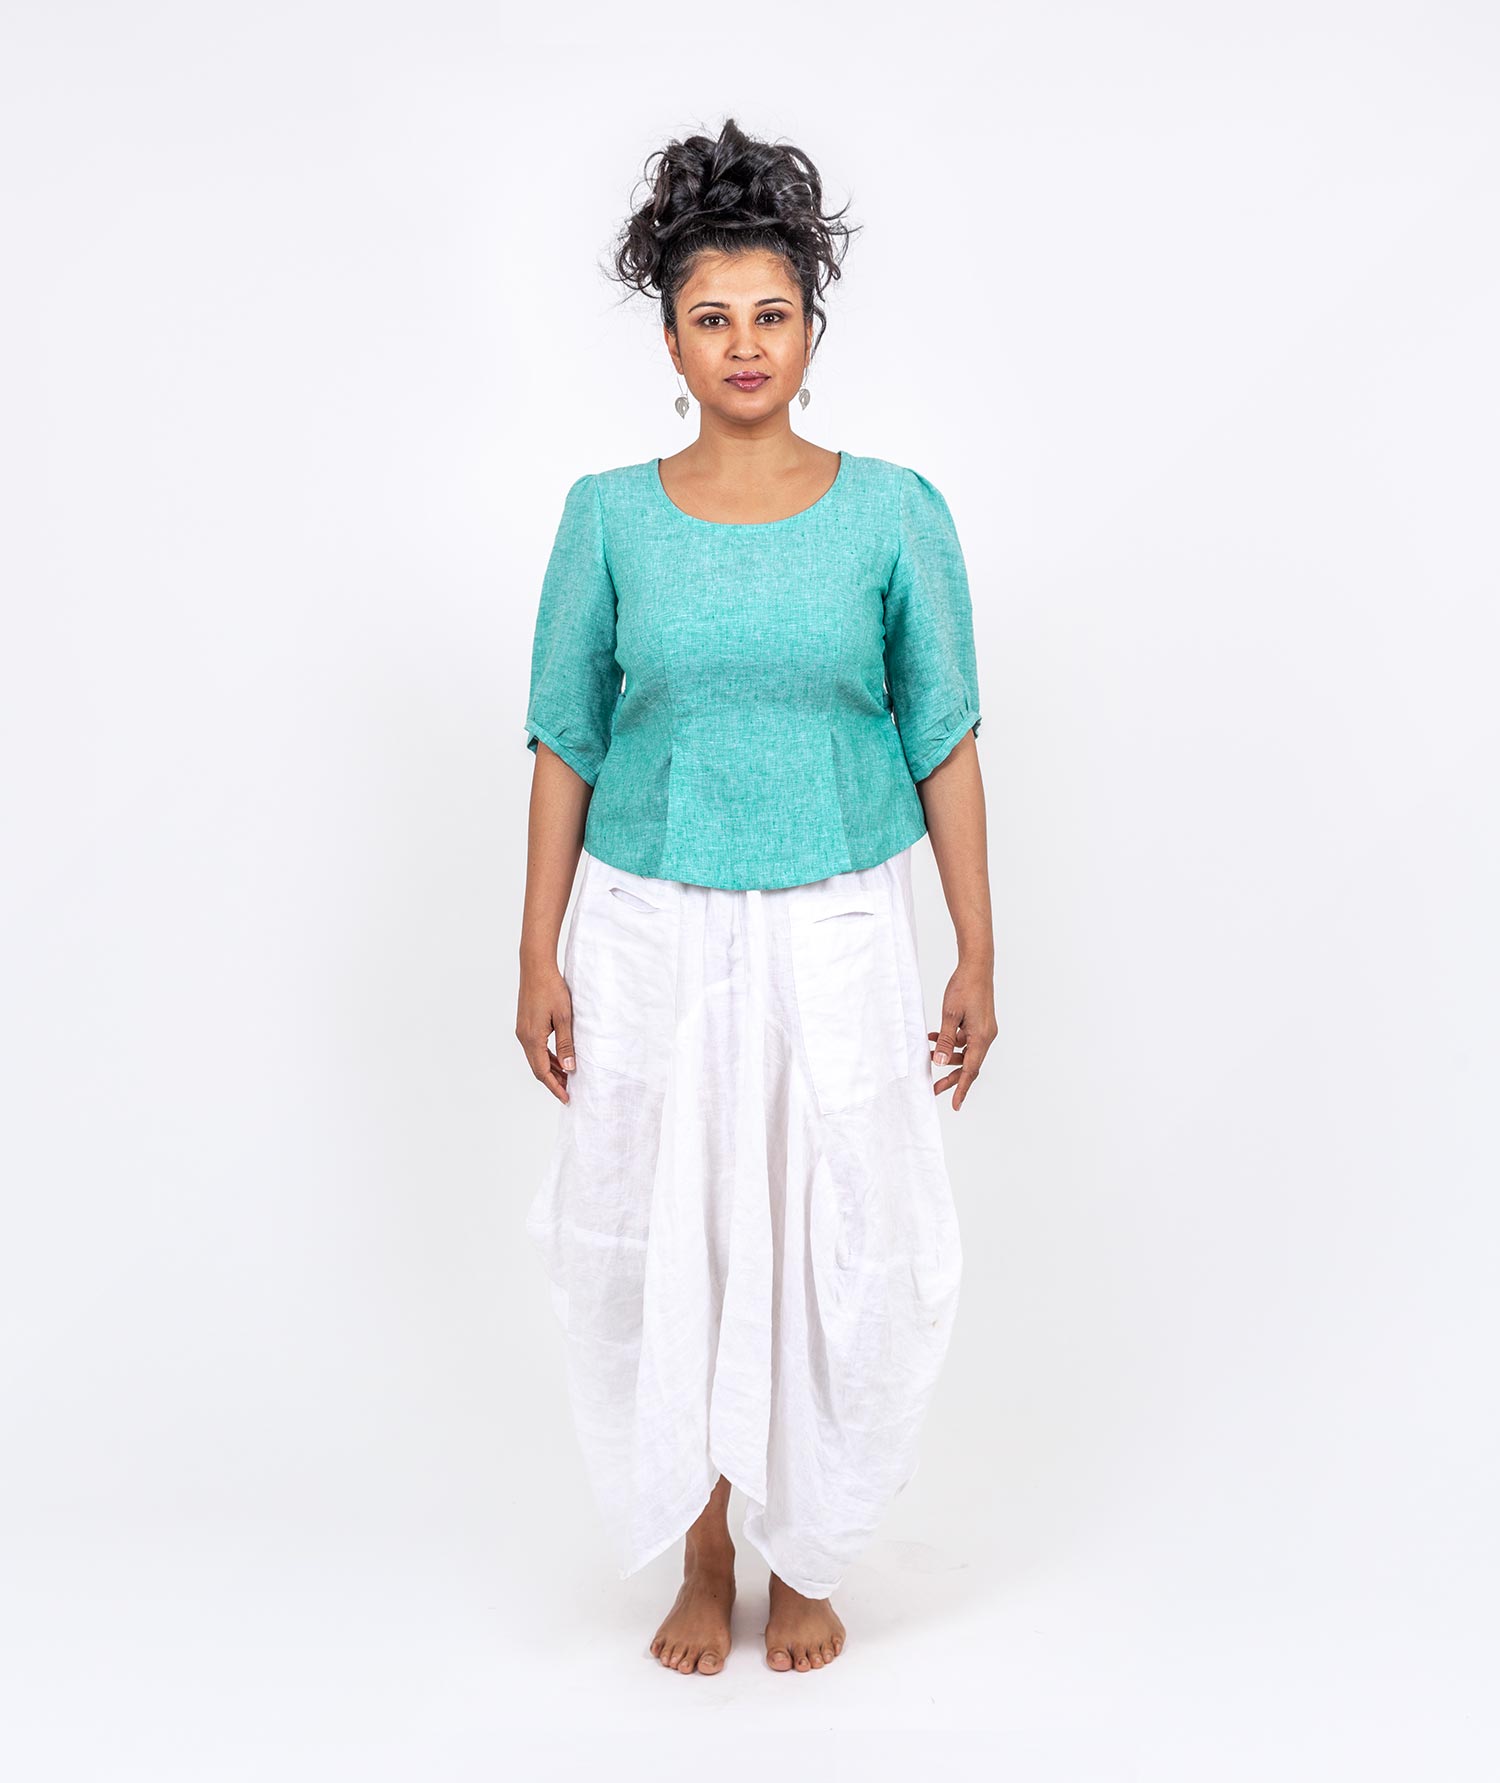 holi-boli-ethical-fashion-india-clothes-2020-72